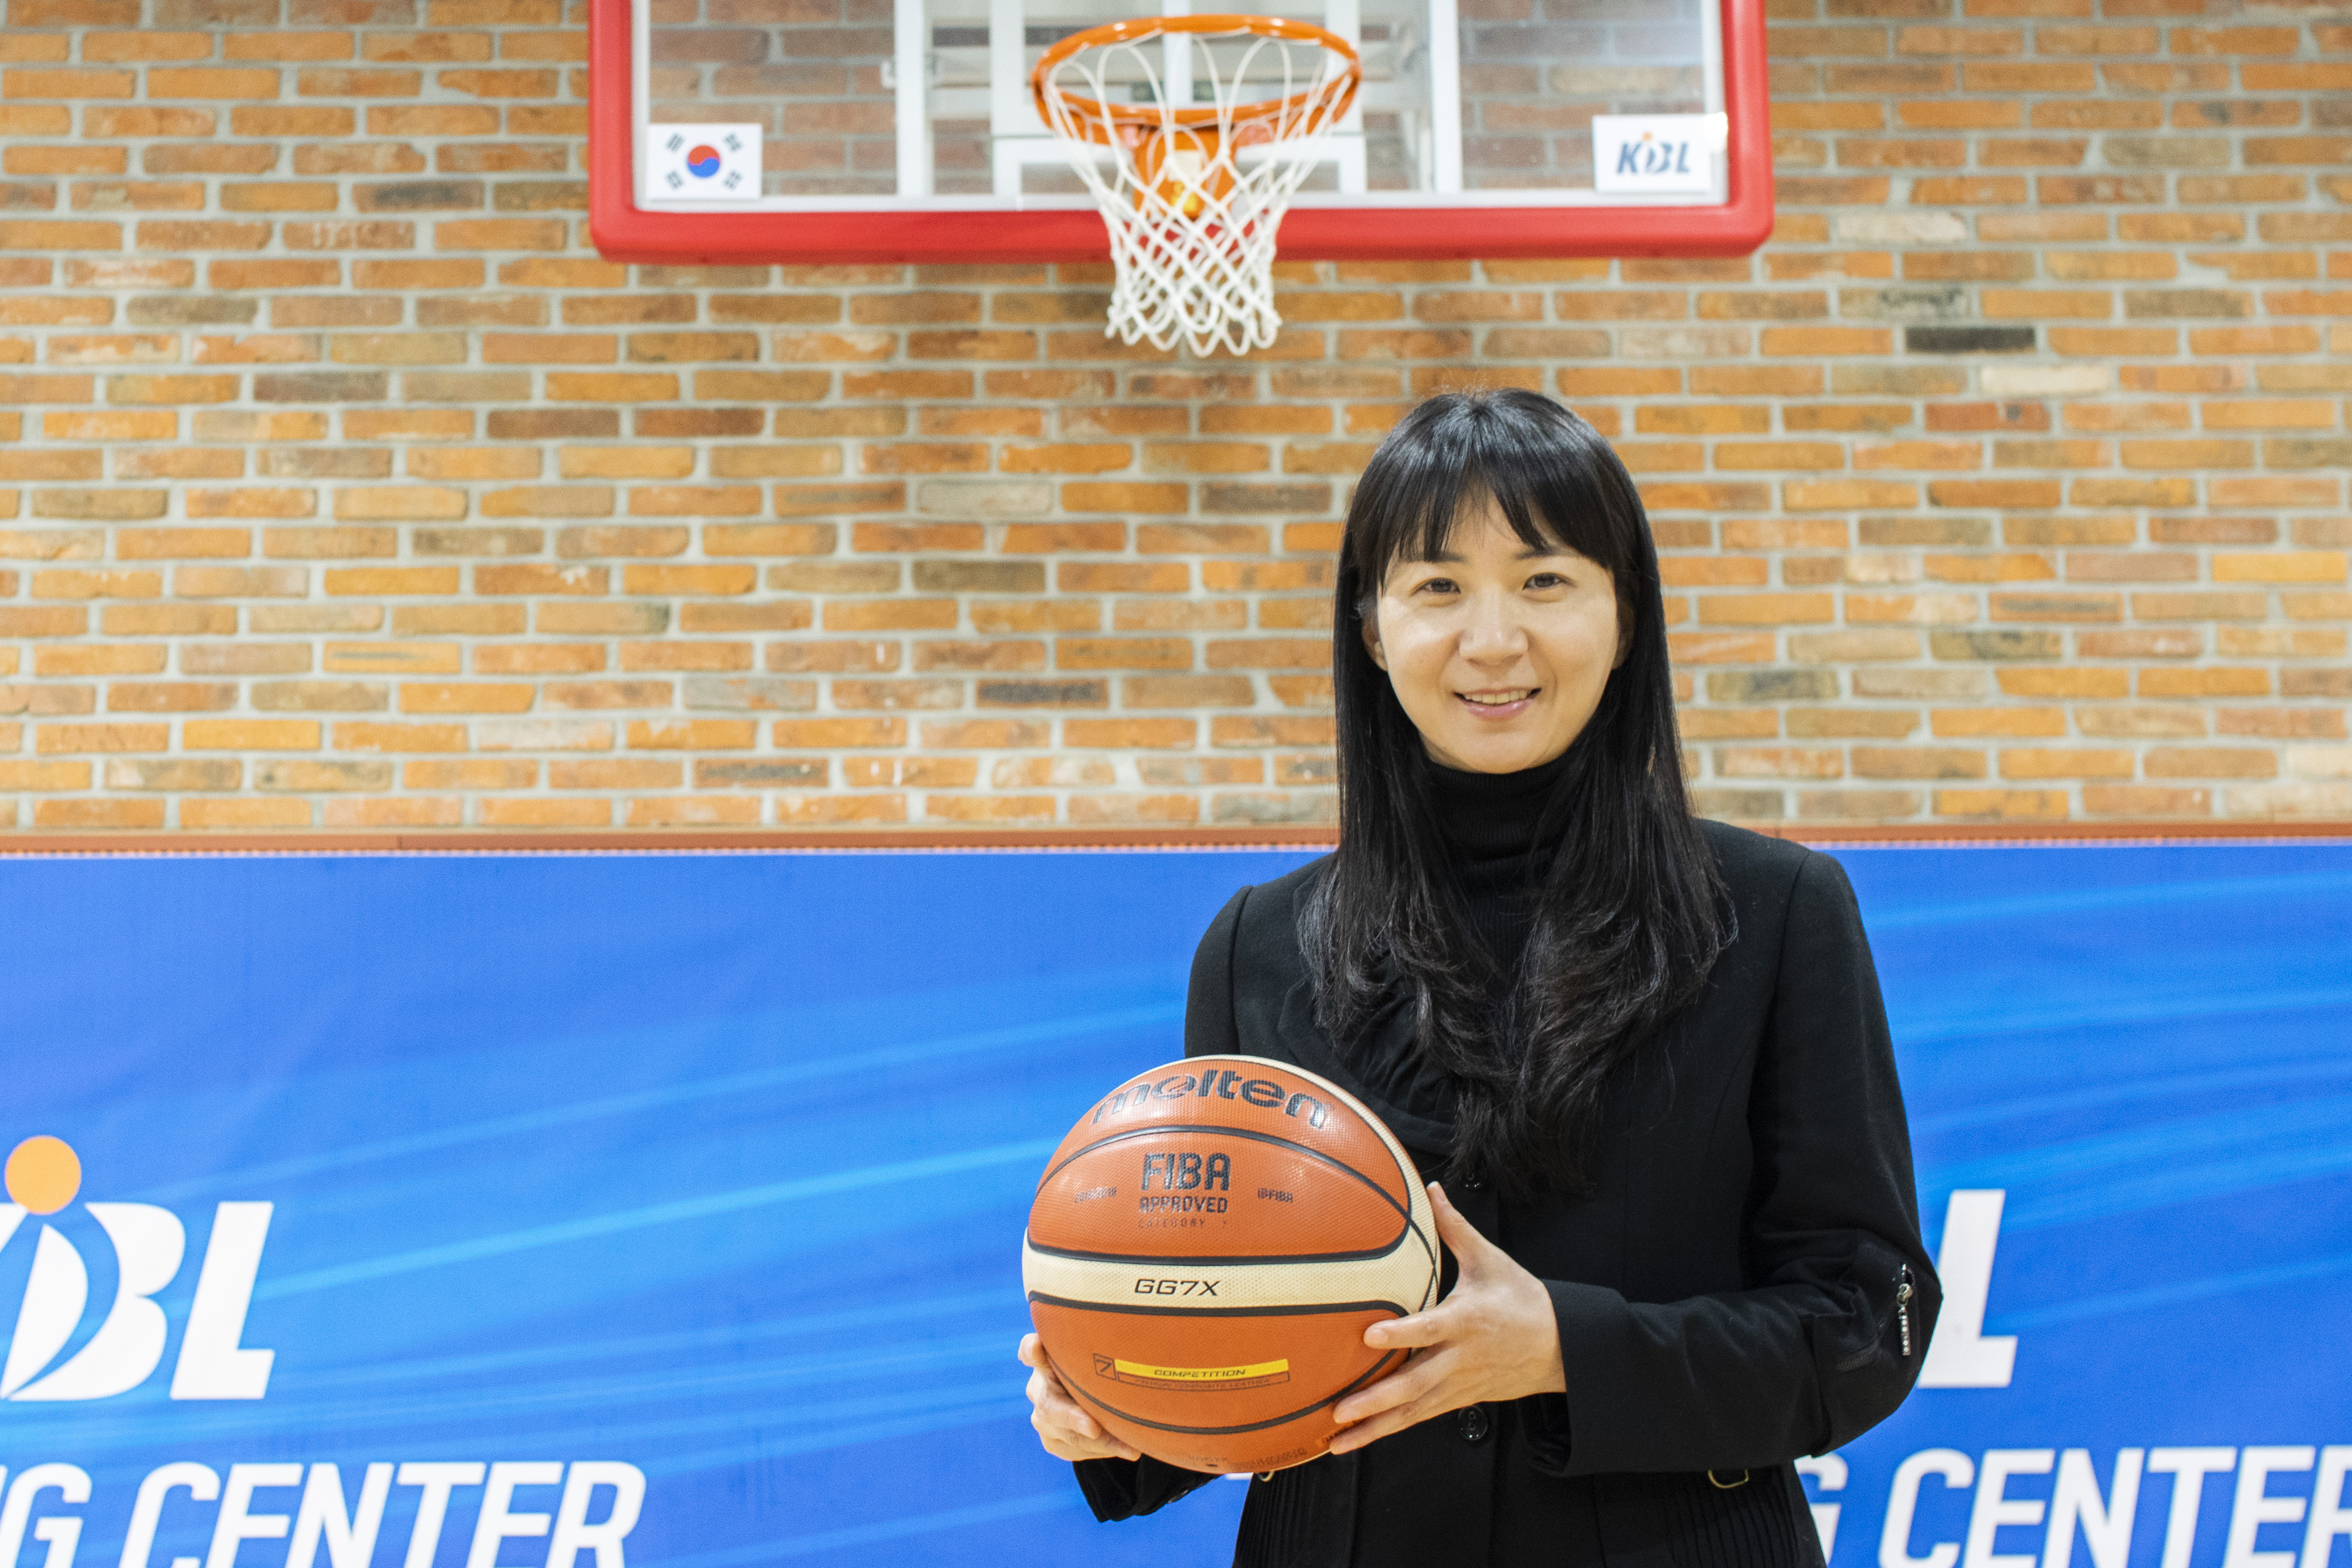 홍선희 심판이 지난 10일 서울 강남 KBL센터 지하 트레이닝실에서 농구공을 들고 미소 짓고 있다.